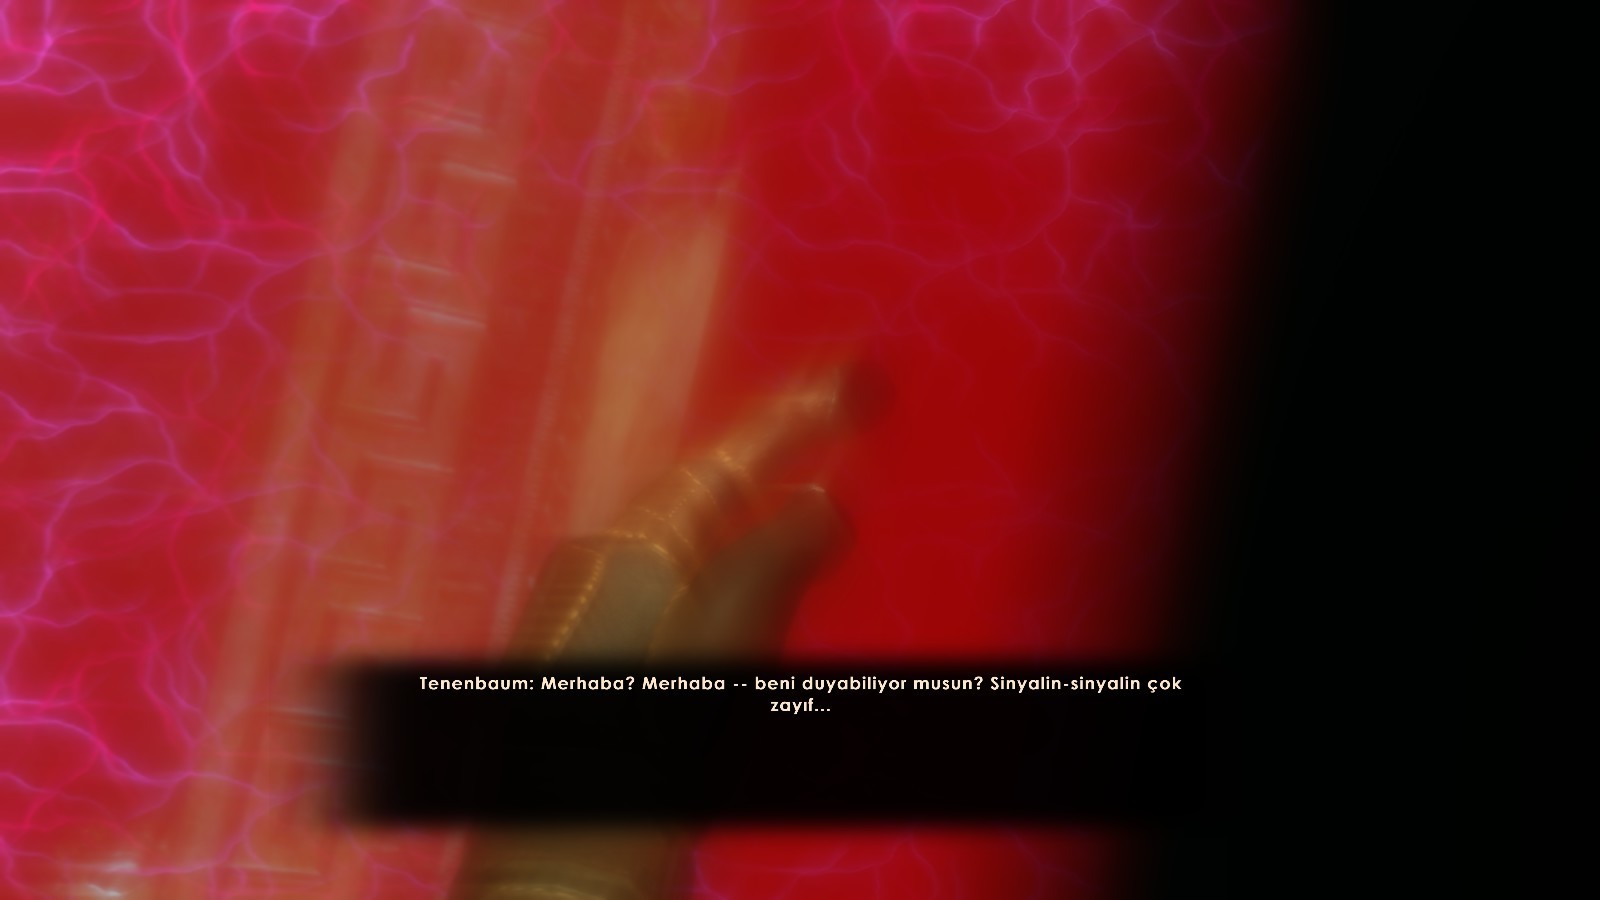 BioShock 2 Türkçe Yama YAYINLANDI! (Normal Sürüm ve Remastered Uyumlu)